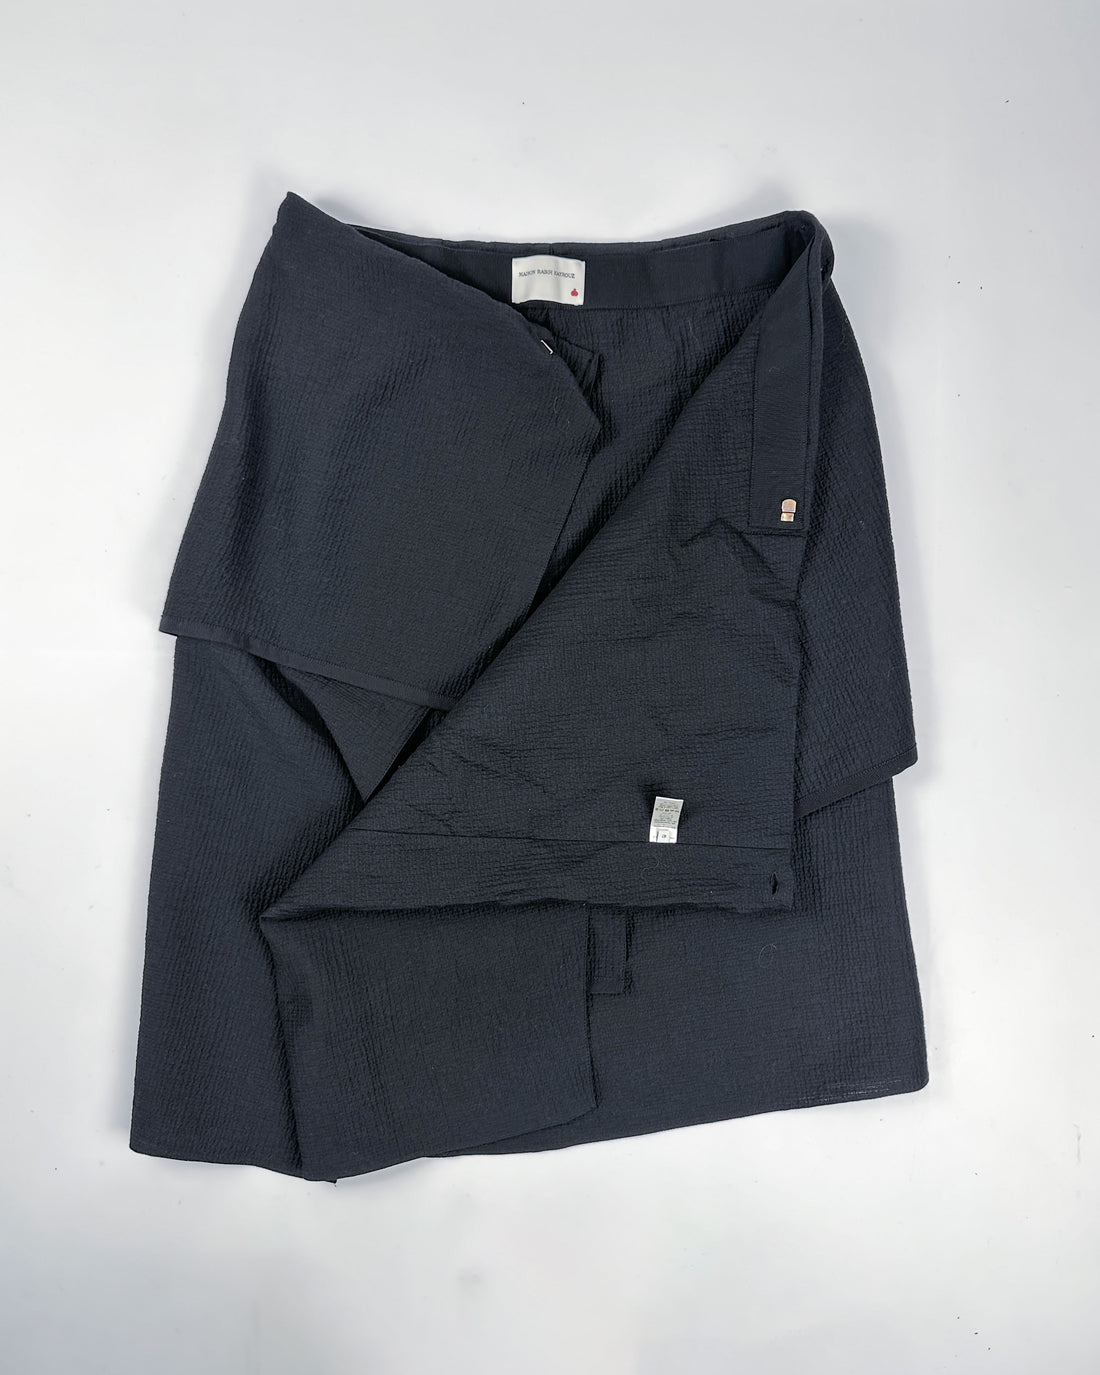 Maison Rabih Kayrouz Black Textured Skirt 2000's